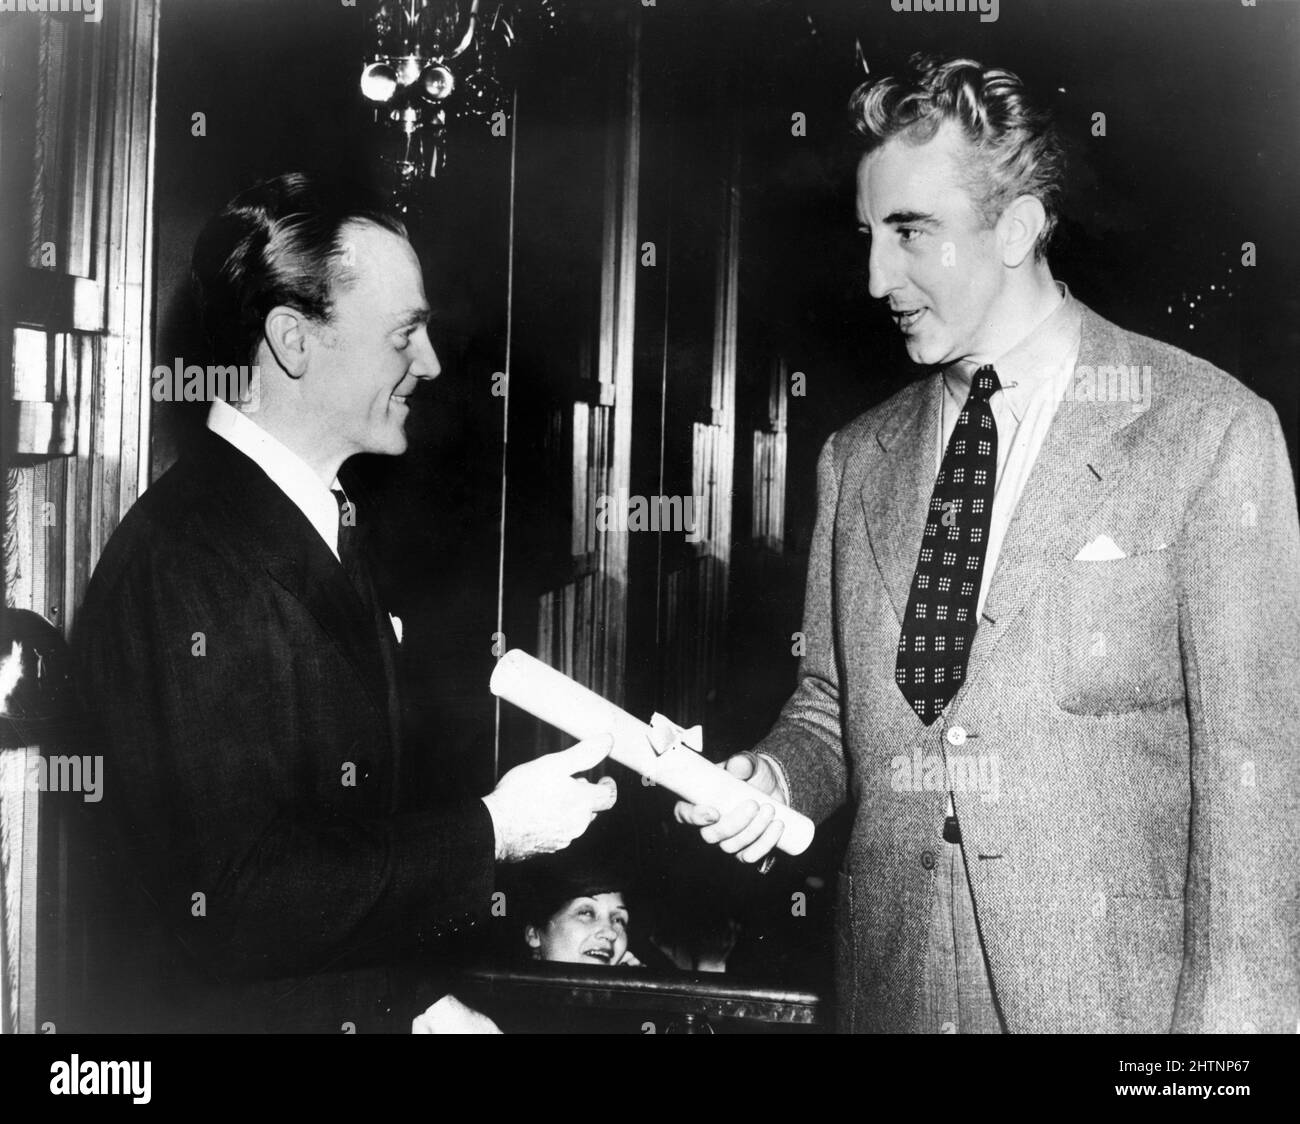 JAMES CAGNEY recibe el premio New York Film Critics Circle Award al mejor actor de 1938 por su actuación como Rocky Sullivan en ÁNGELES CON CARAS SUCIAS, presentado por el guionista DUDLEY NICHOLS, presidente del Screen Writers Guild, en una ceremonia en la sala Rainbow, Rockefeller Center en Nueva York en enero de 1939 Foto de stock